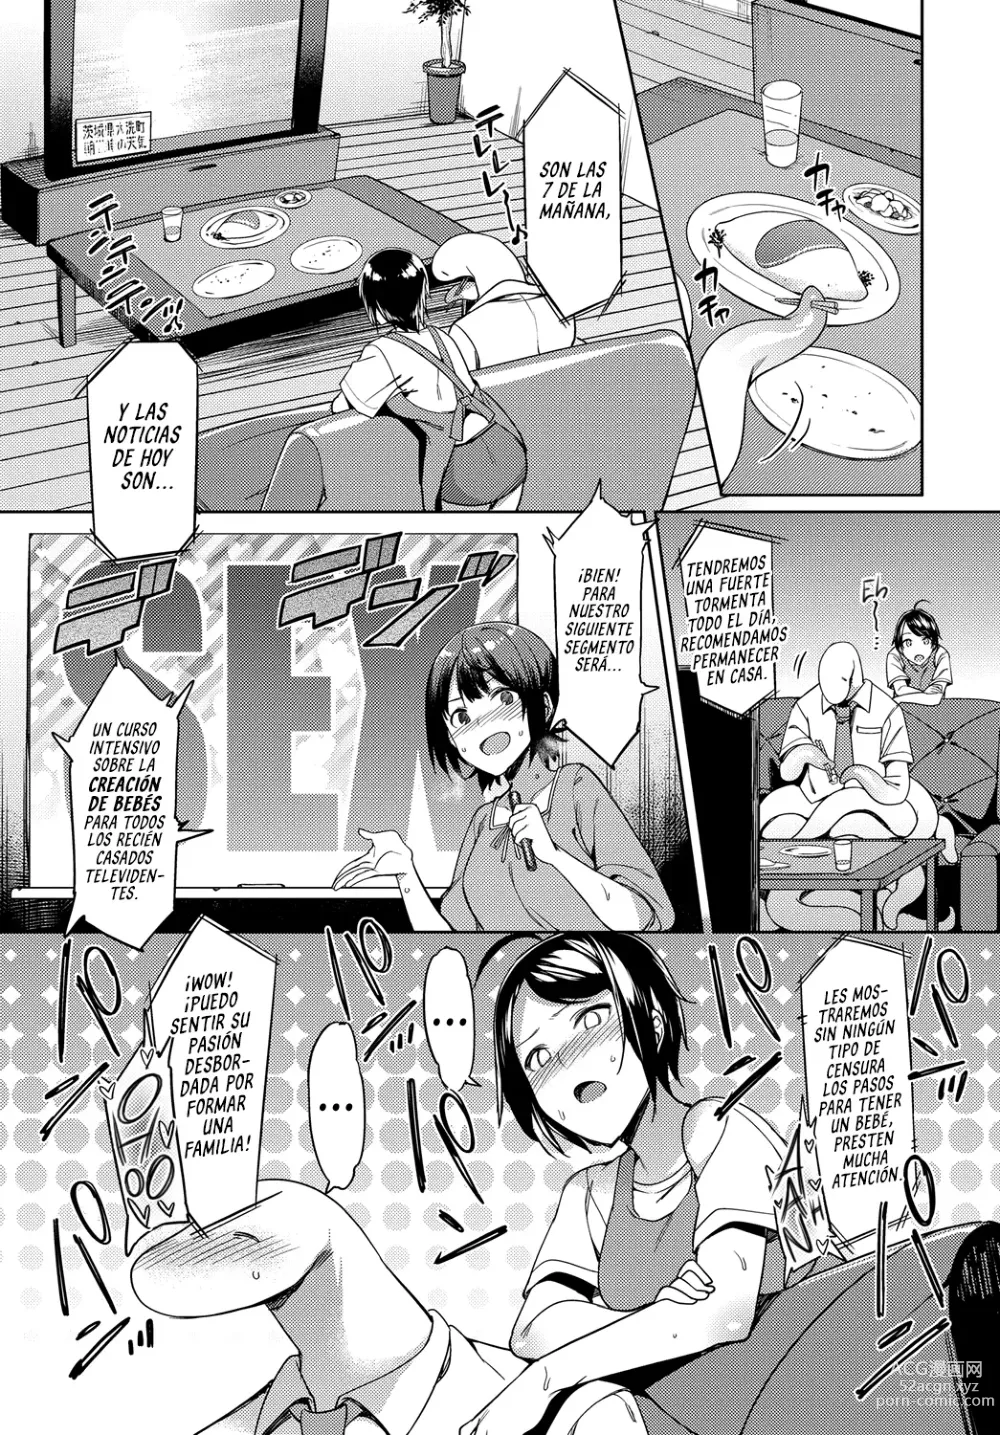 Page 3 of manga Michi Tono Dokidoki Shinkon Seikatsu!? - Una Extraña DOKI DOKI Vida de Recién Casados!?